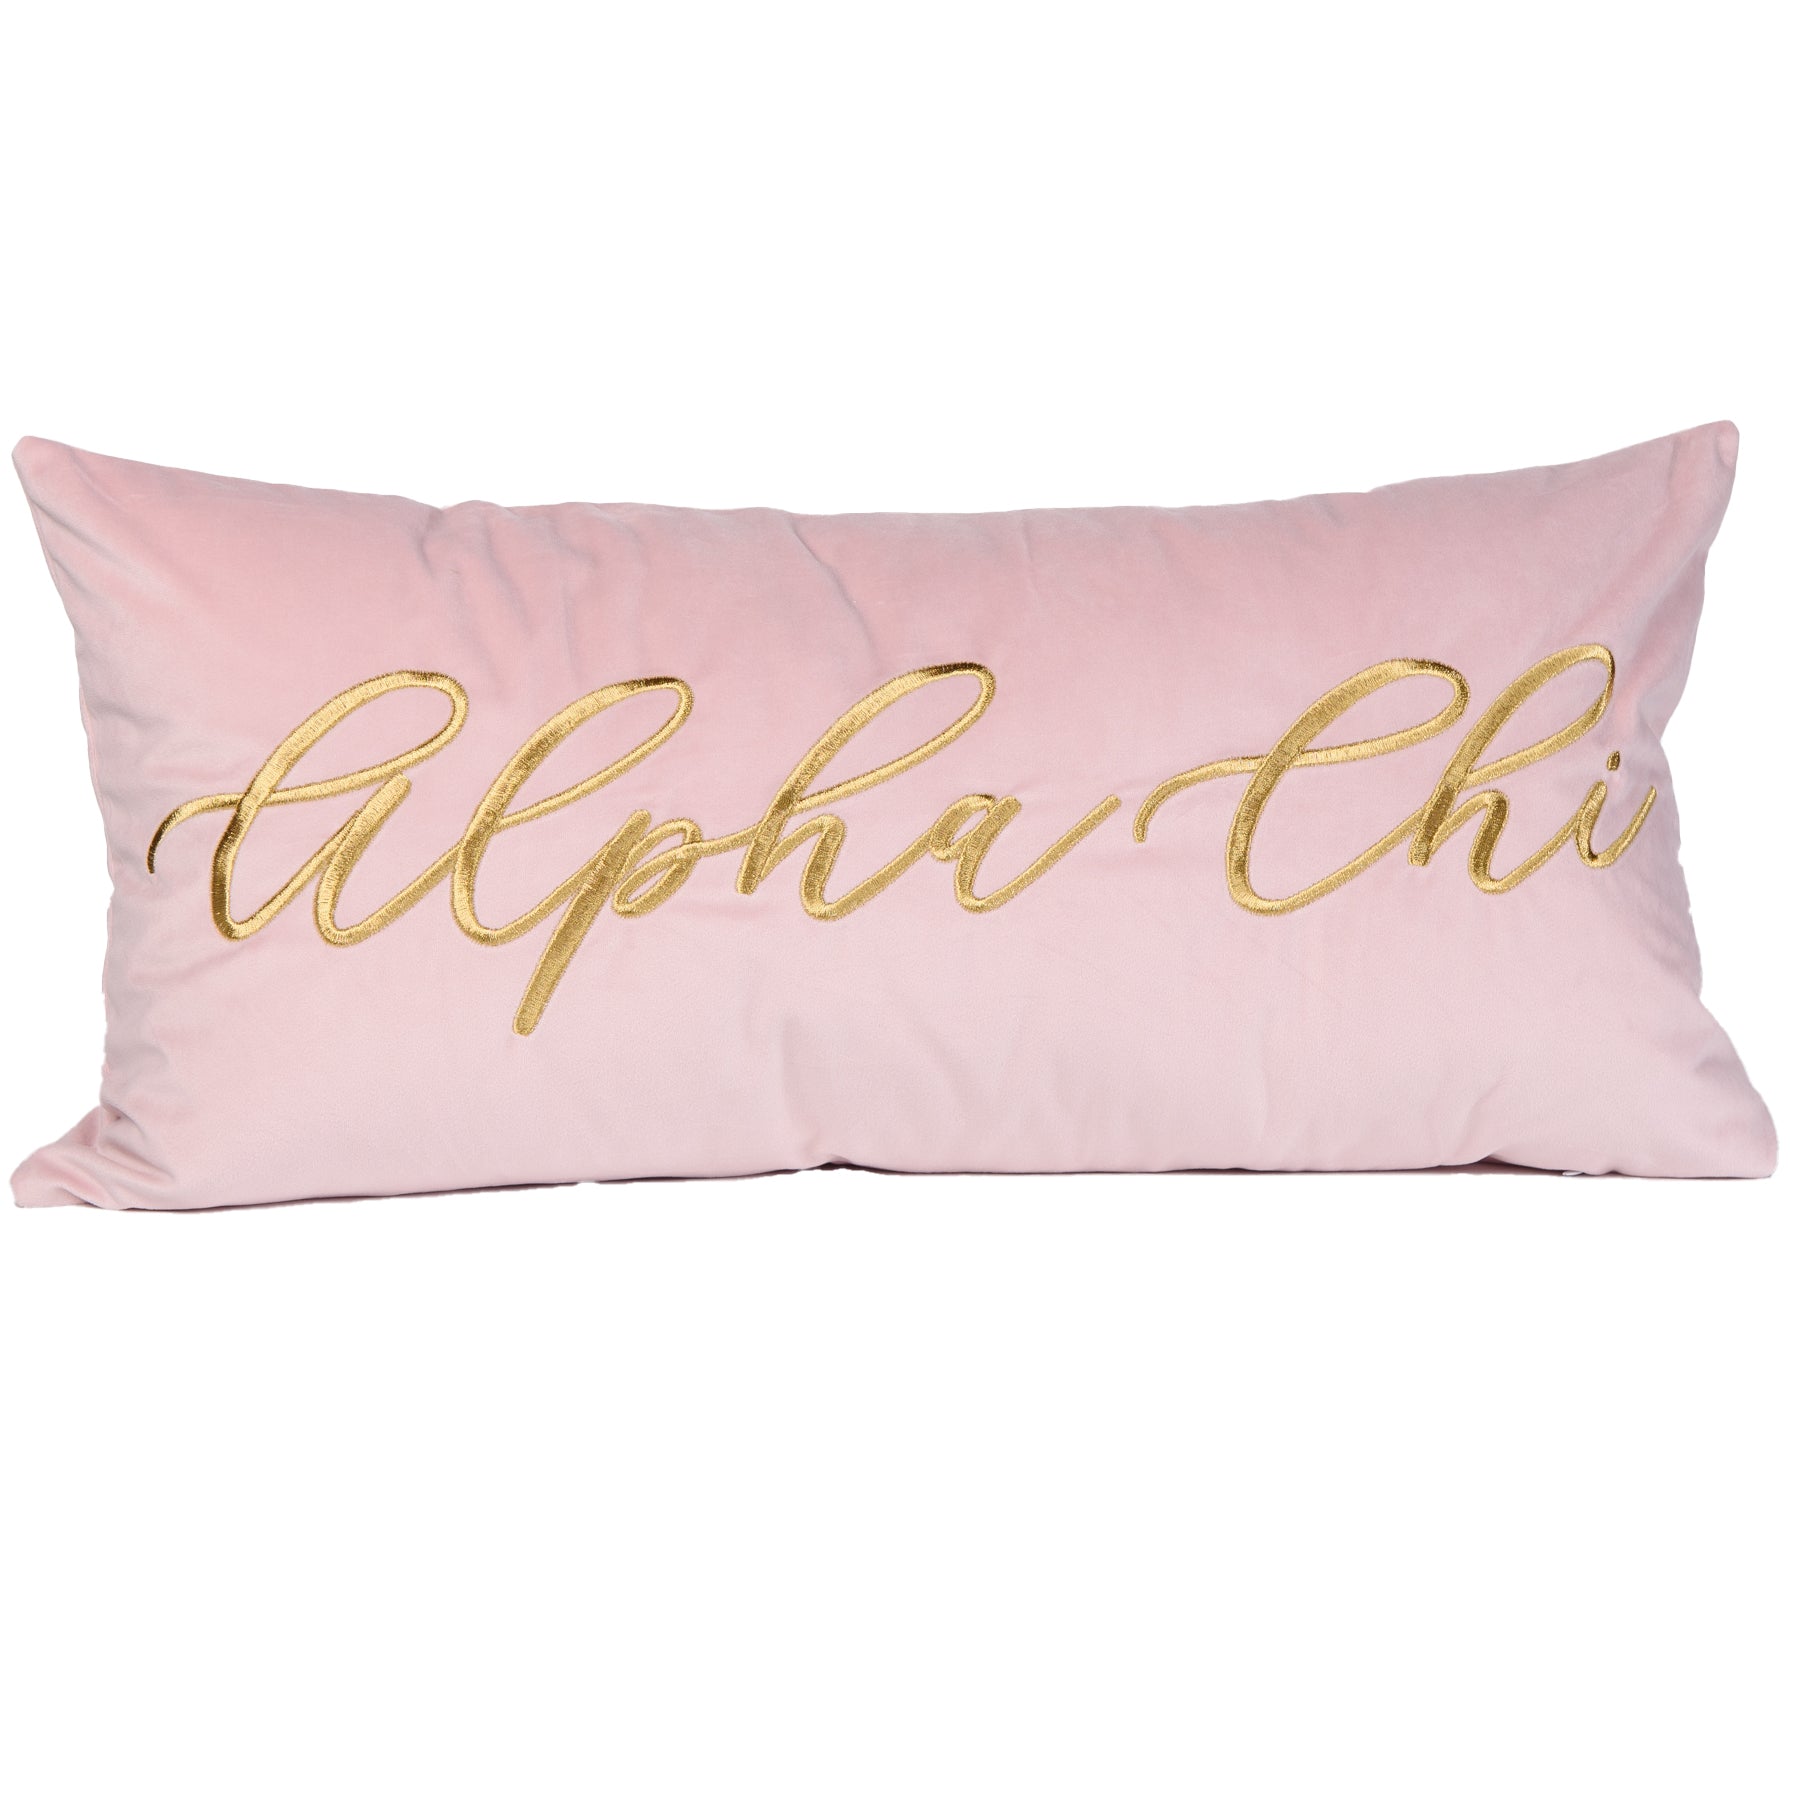 ALPHA CHI VINTAGE VEGAS Embroidered Lumbar Pillow